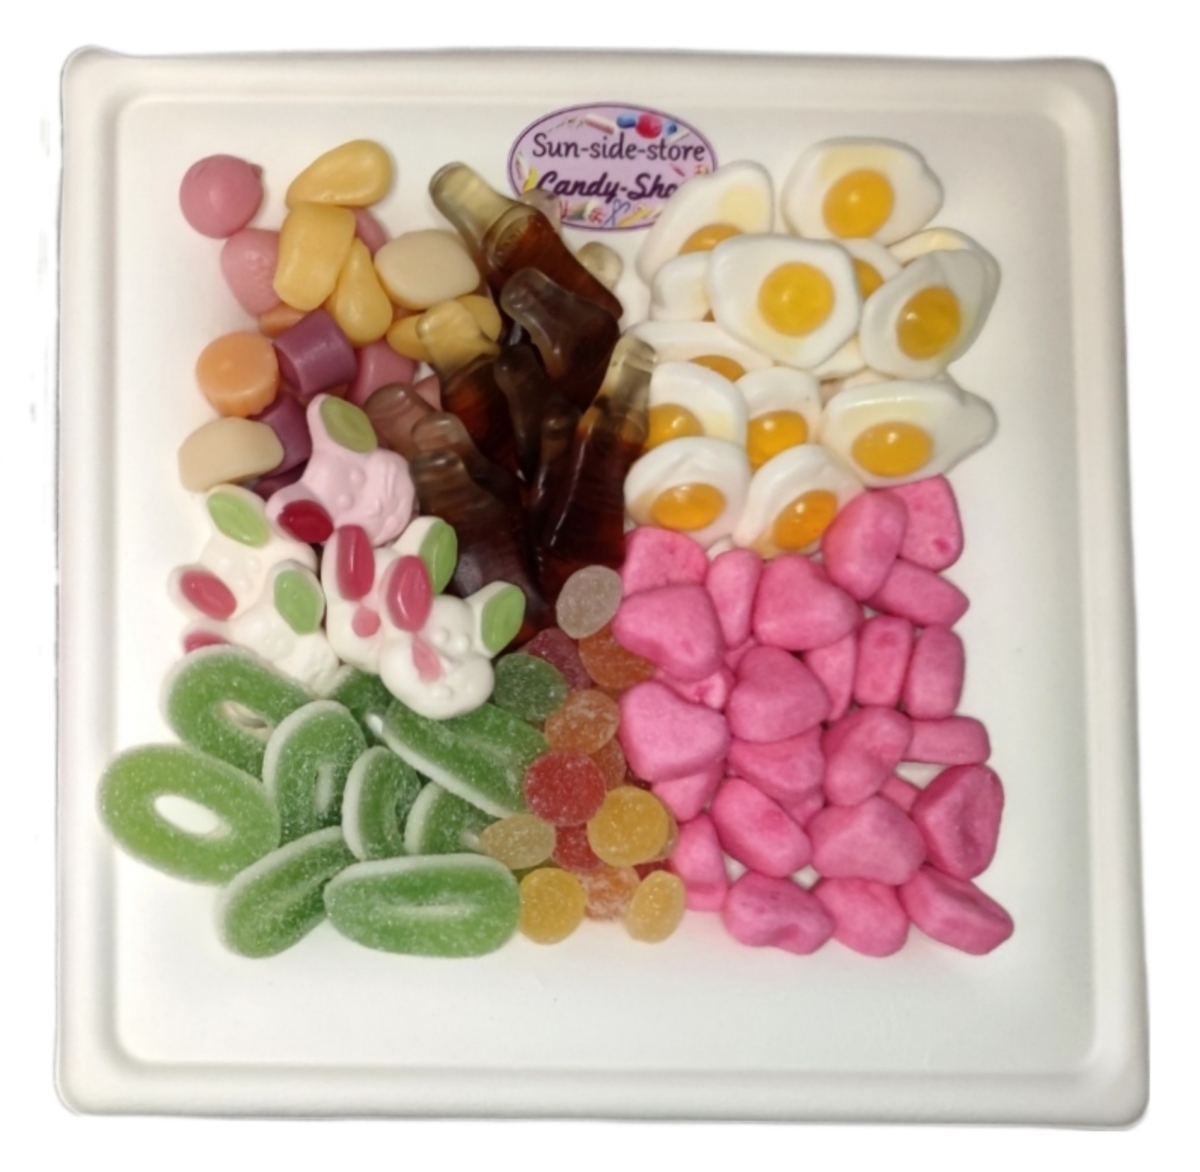 Beispielbild unserer Süßigkeitenplatten für ihre Firmenfeier oder Geburtstagsfeier. In 4 Varianten ist unsere große Partyplatte erhältlich.